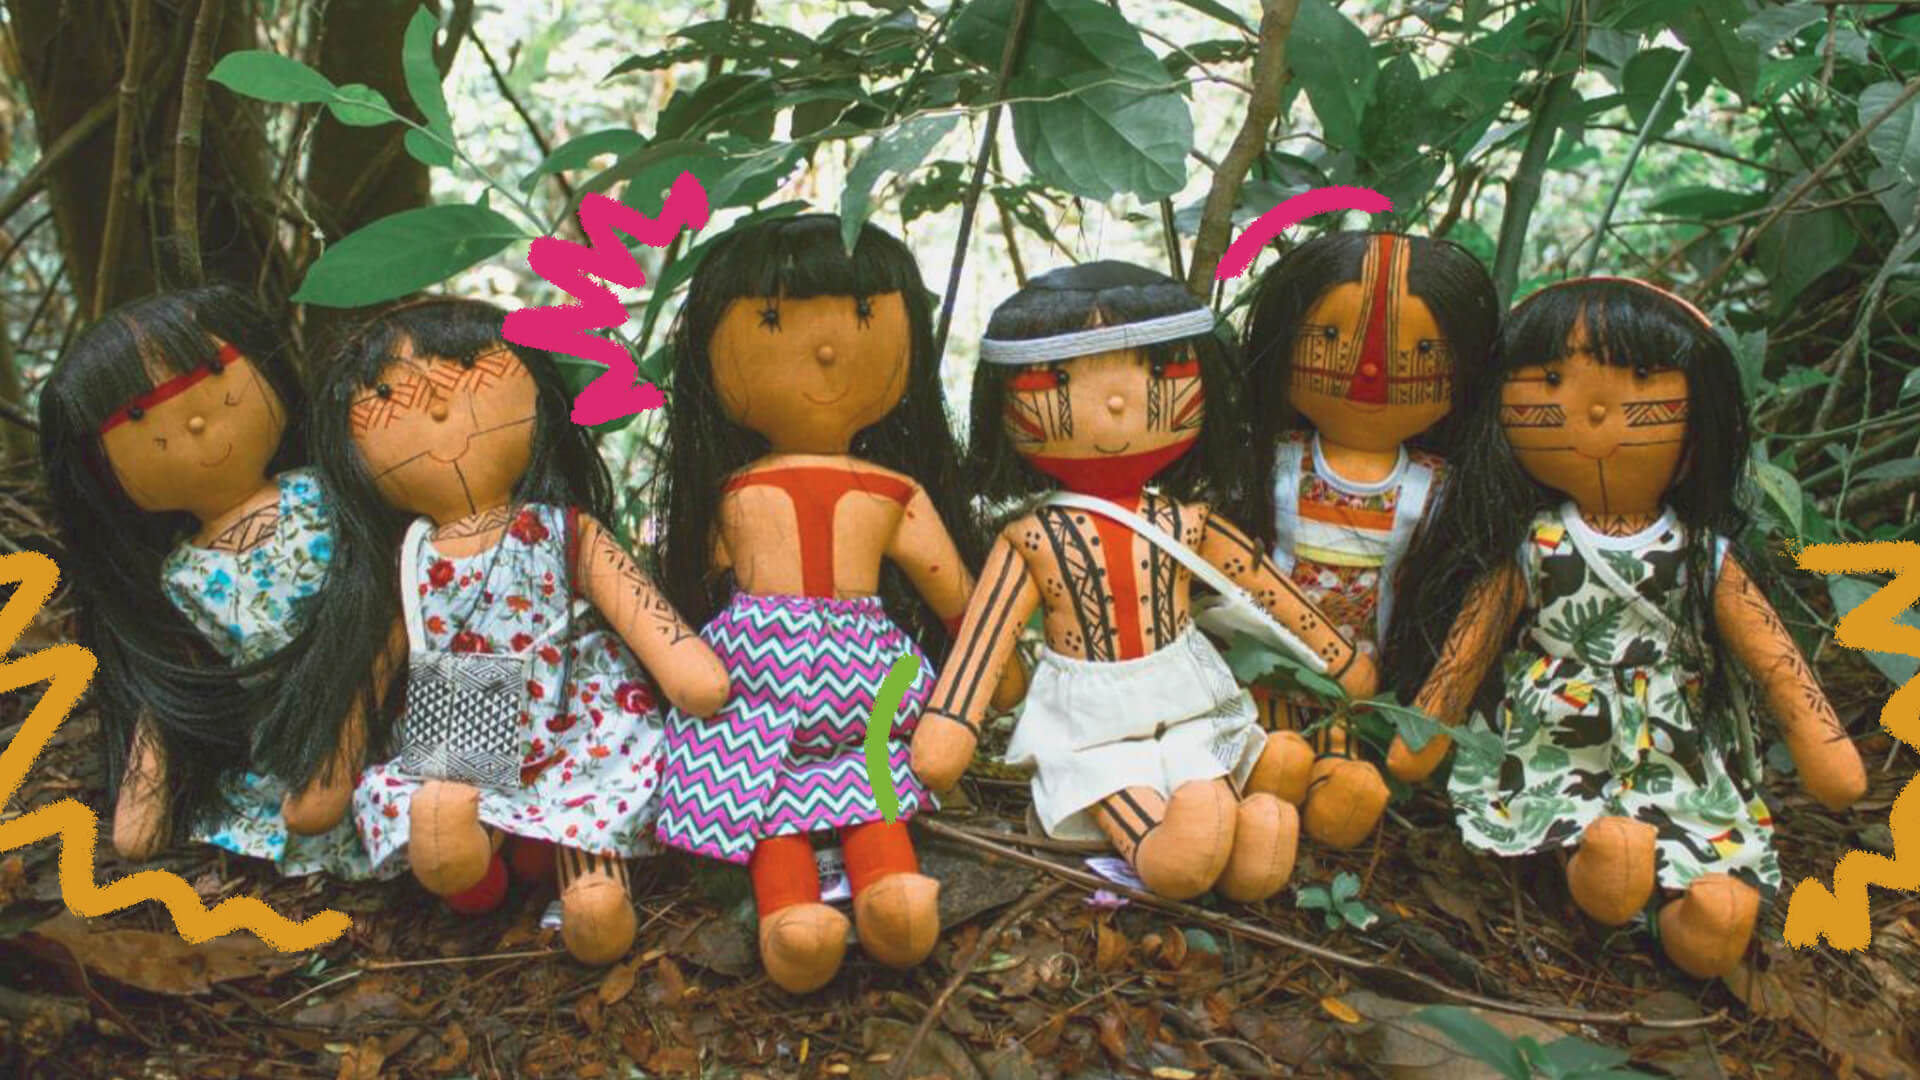 Brinquedos educativos: foto colorida de bonecas indígenas que estão ao ar livre, em meio a árvores, e são exemplos de brinquedos educativos